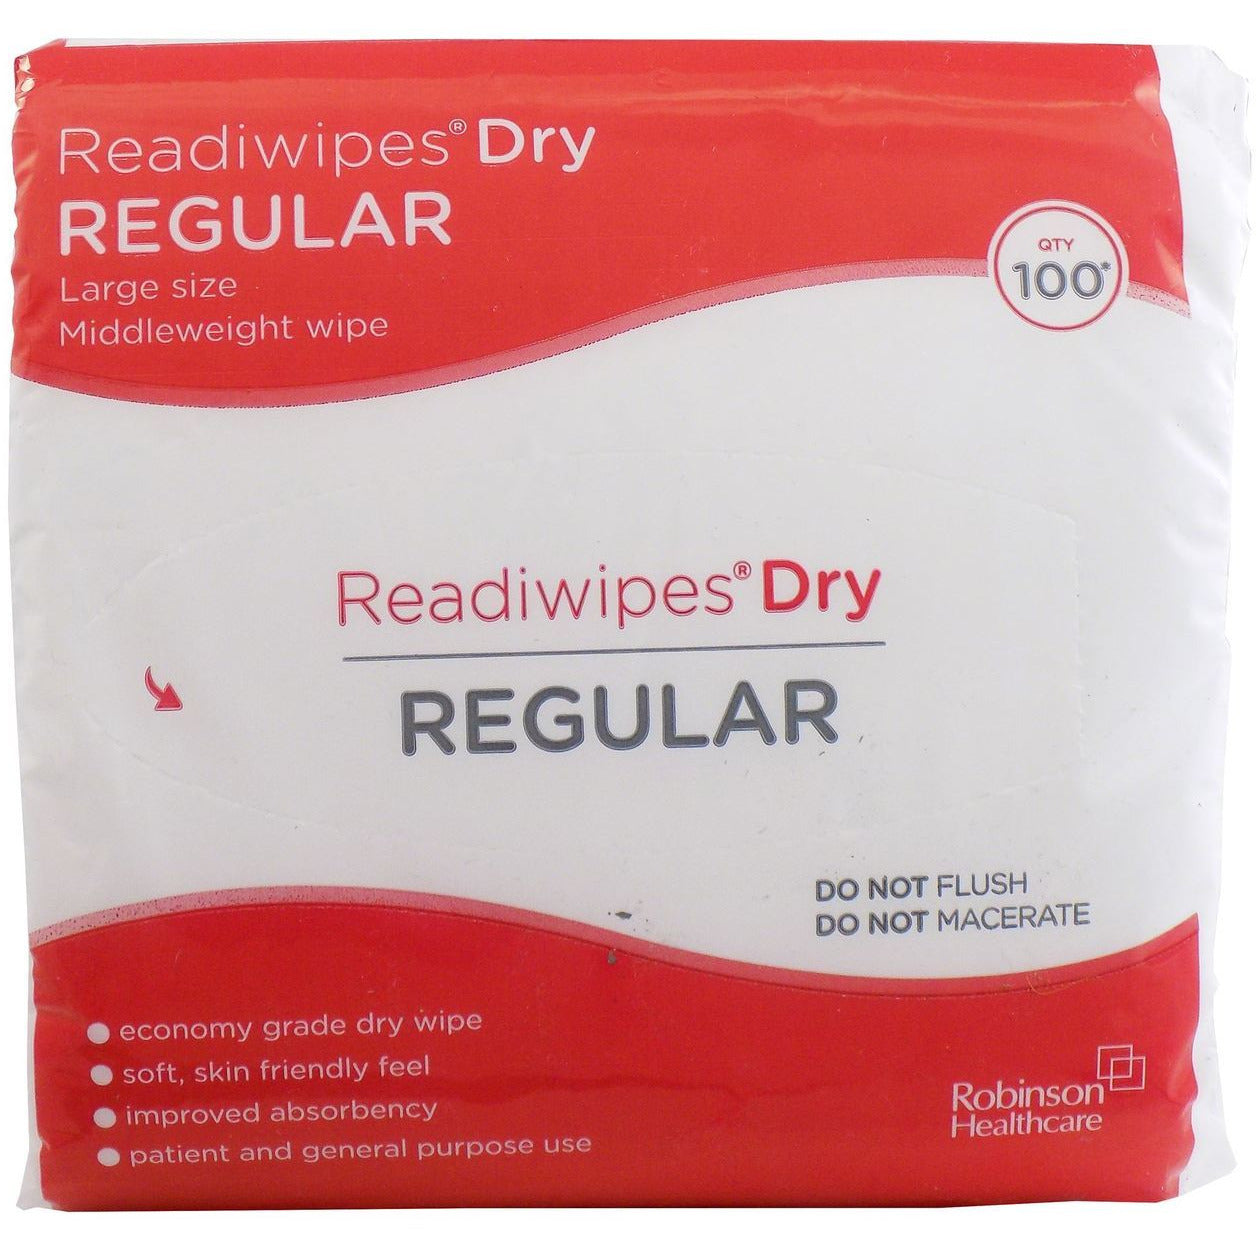 Readiwipes Dry Regular Large 100's